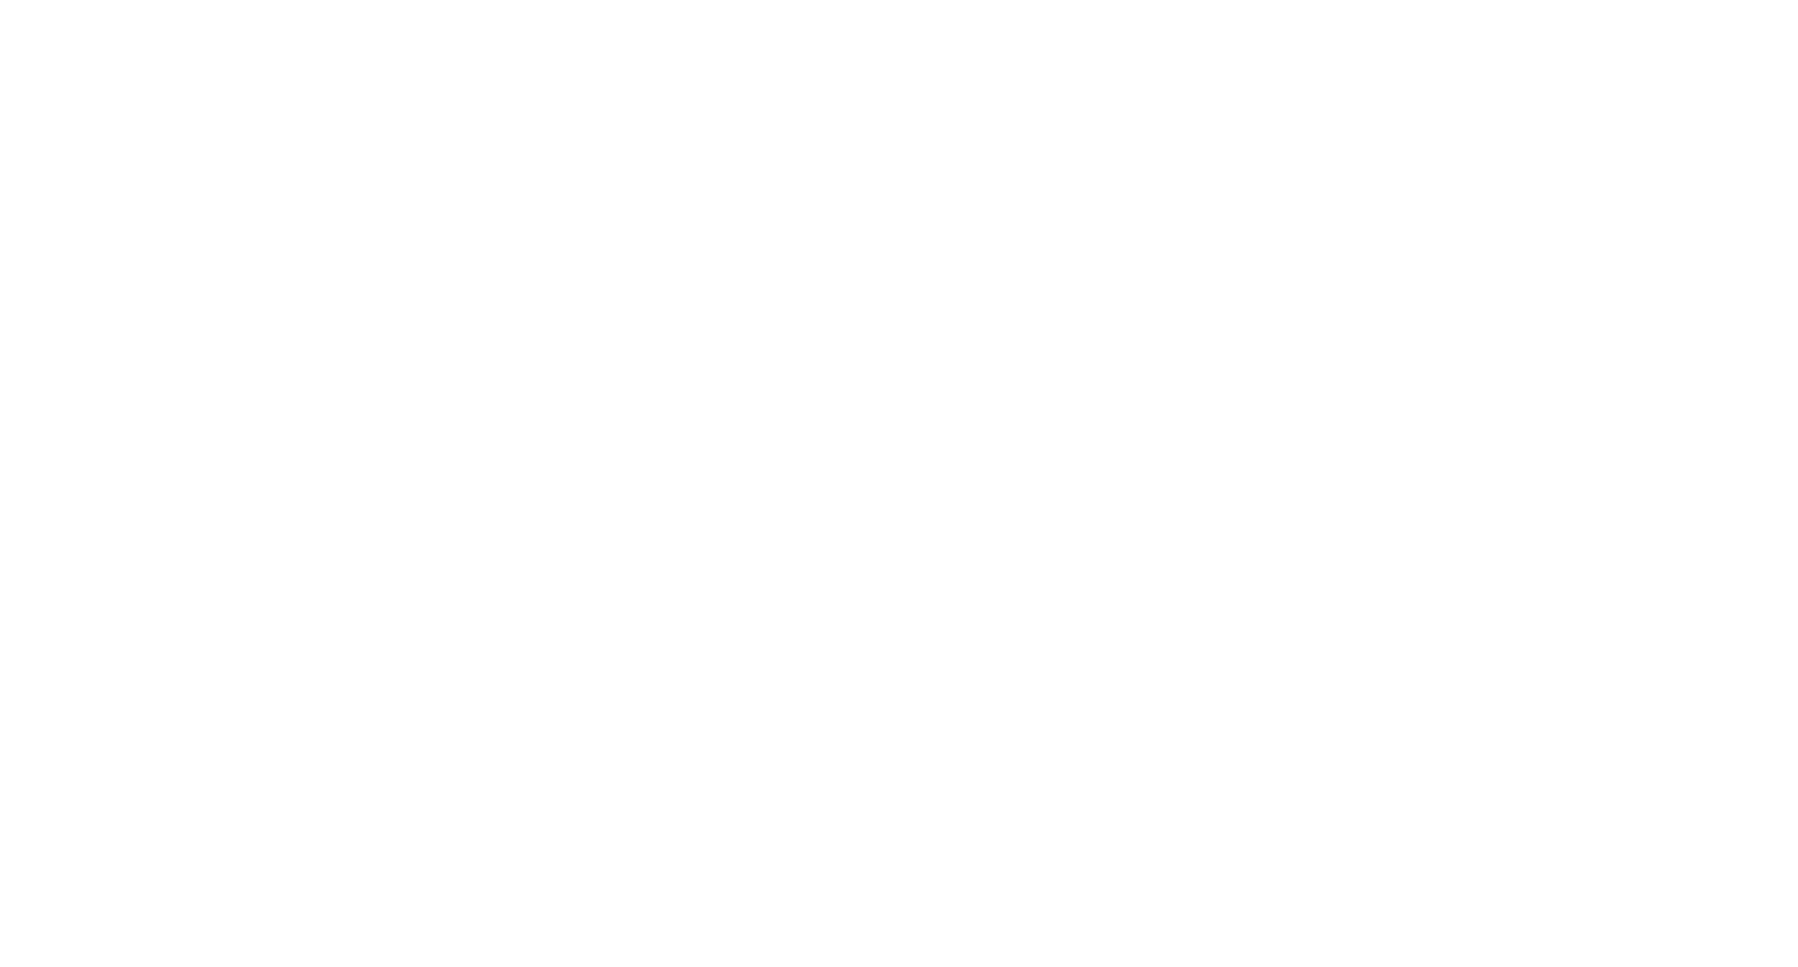 You're Bacon Me Crazy logo